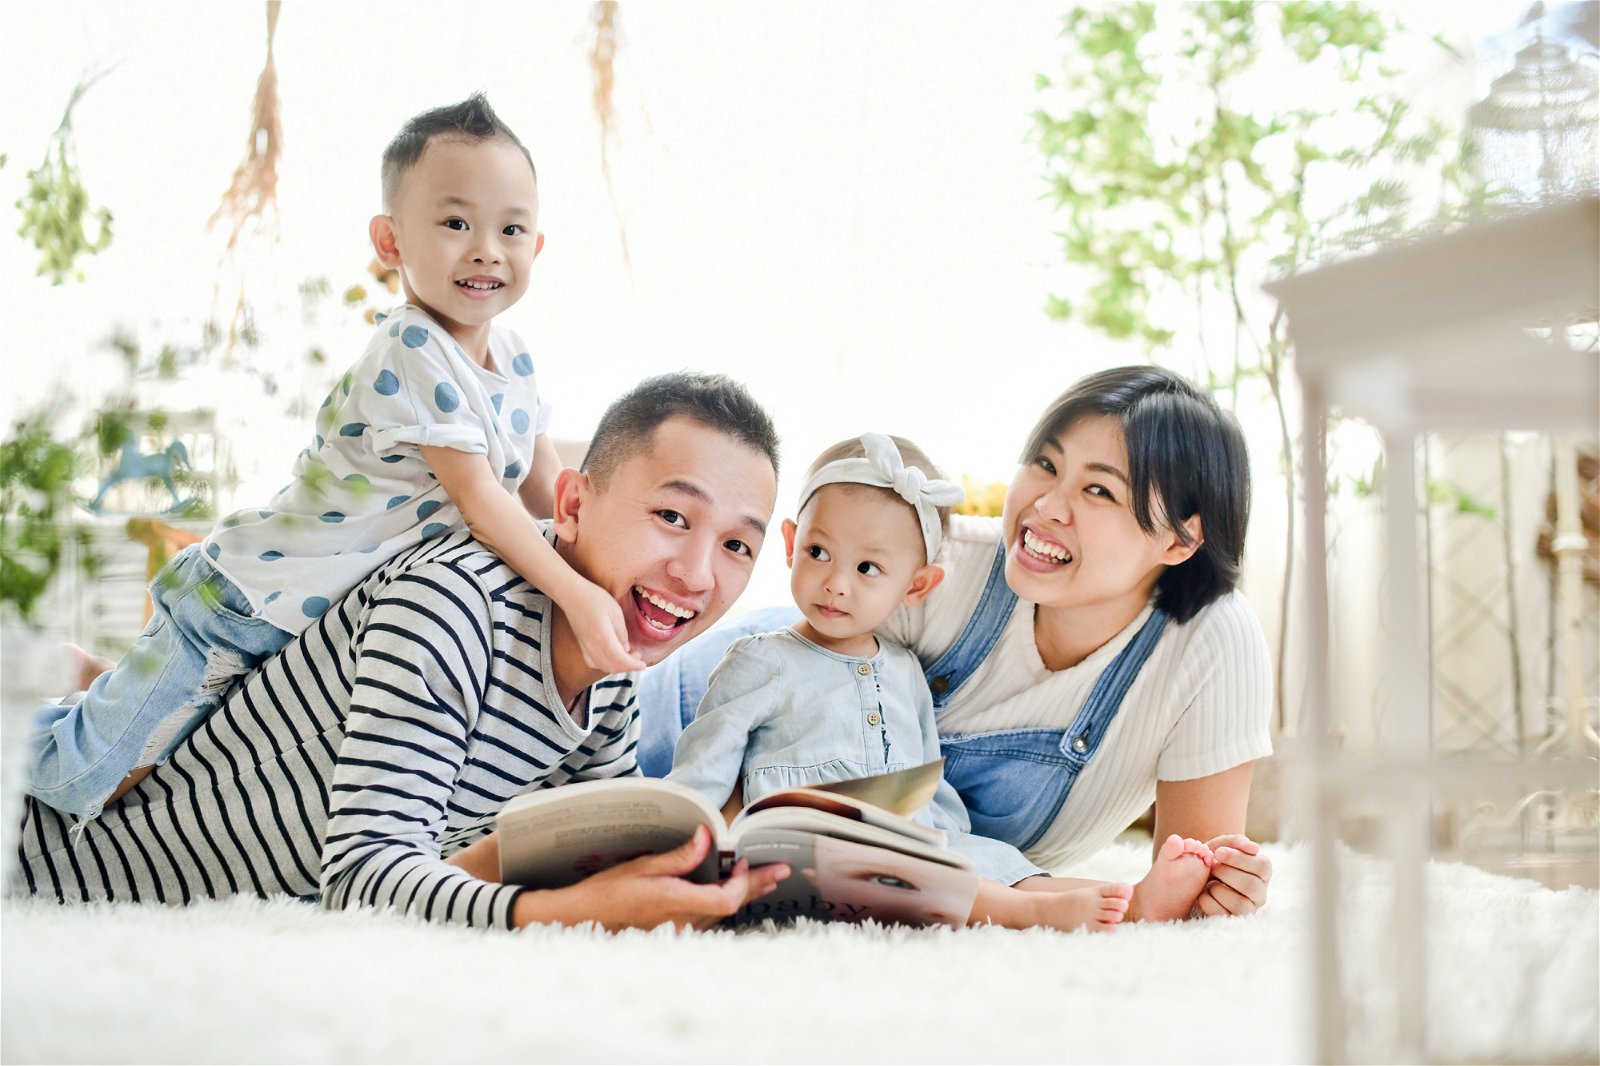 35岁的陈龙金是一对儿女的父亲，儿子陈泽、女儿陈曦，从来不需要央求爸爸讲故事，因为无论孩子作何反应，他坚持每天做这件事，那是他们最珍贵的亲子共读时光。